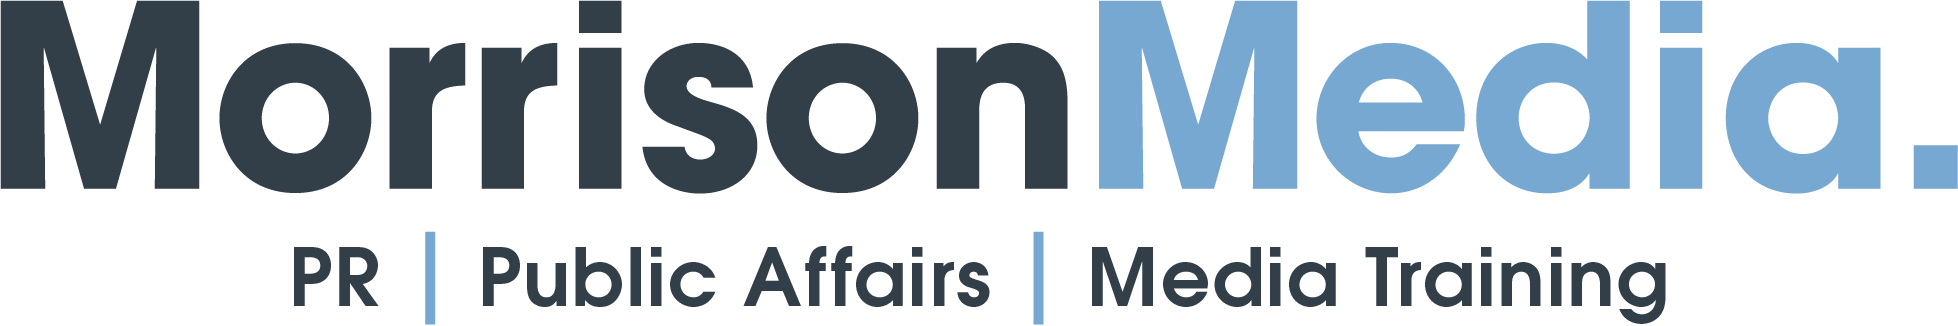 logo for Morrison Media